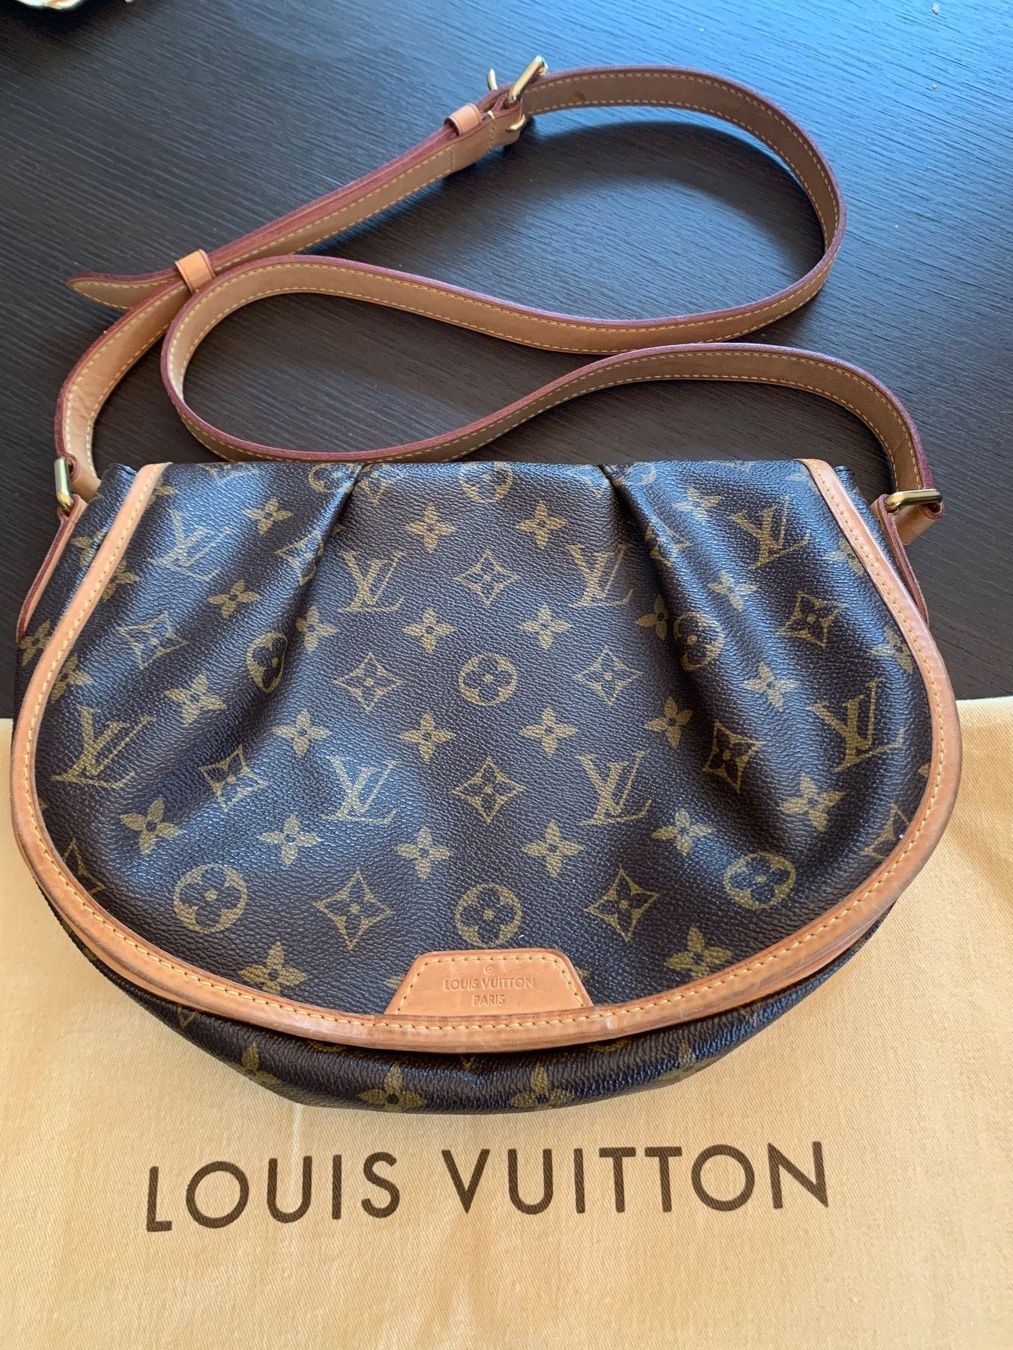 Original Louis Vuitton Umhängetasche kaufen auf Ricardo